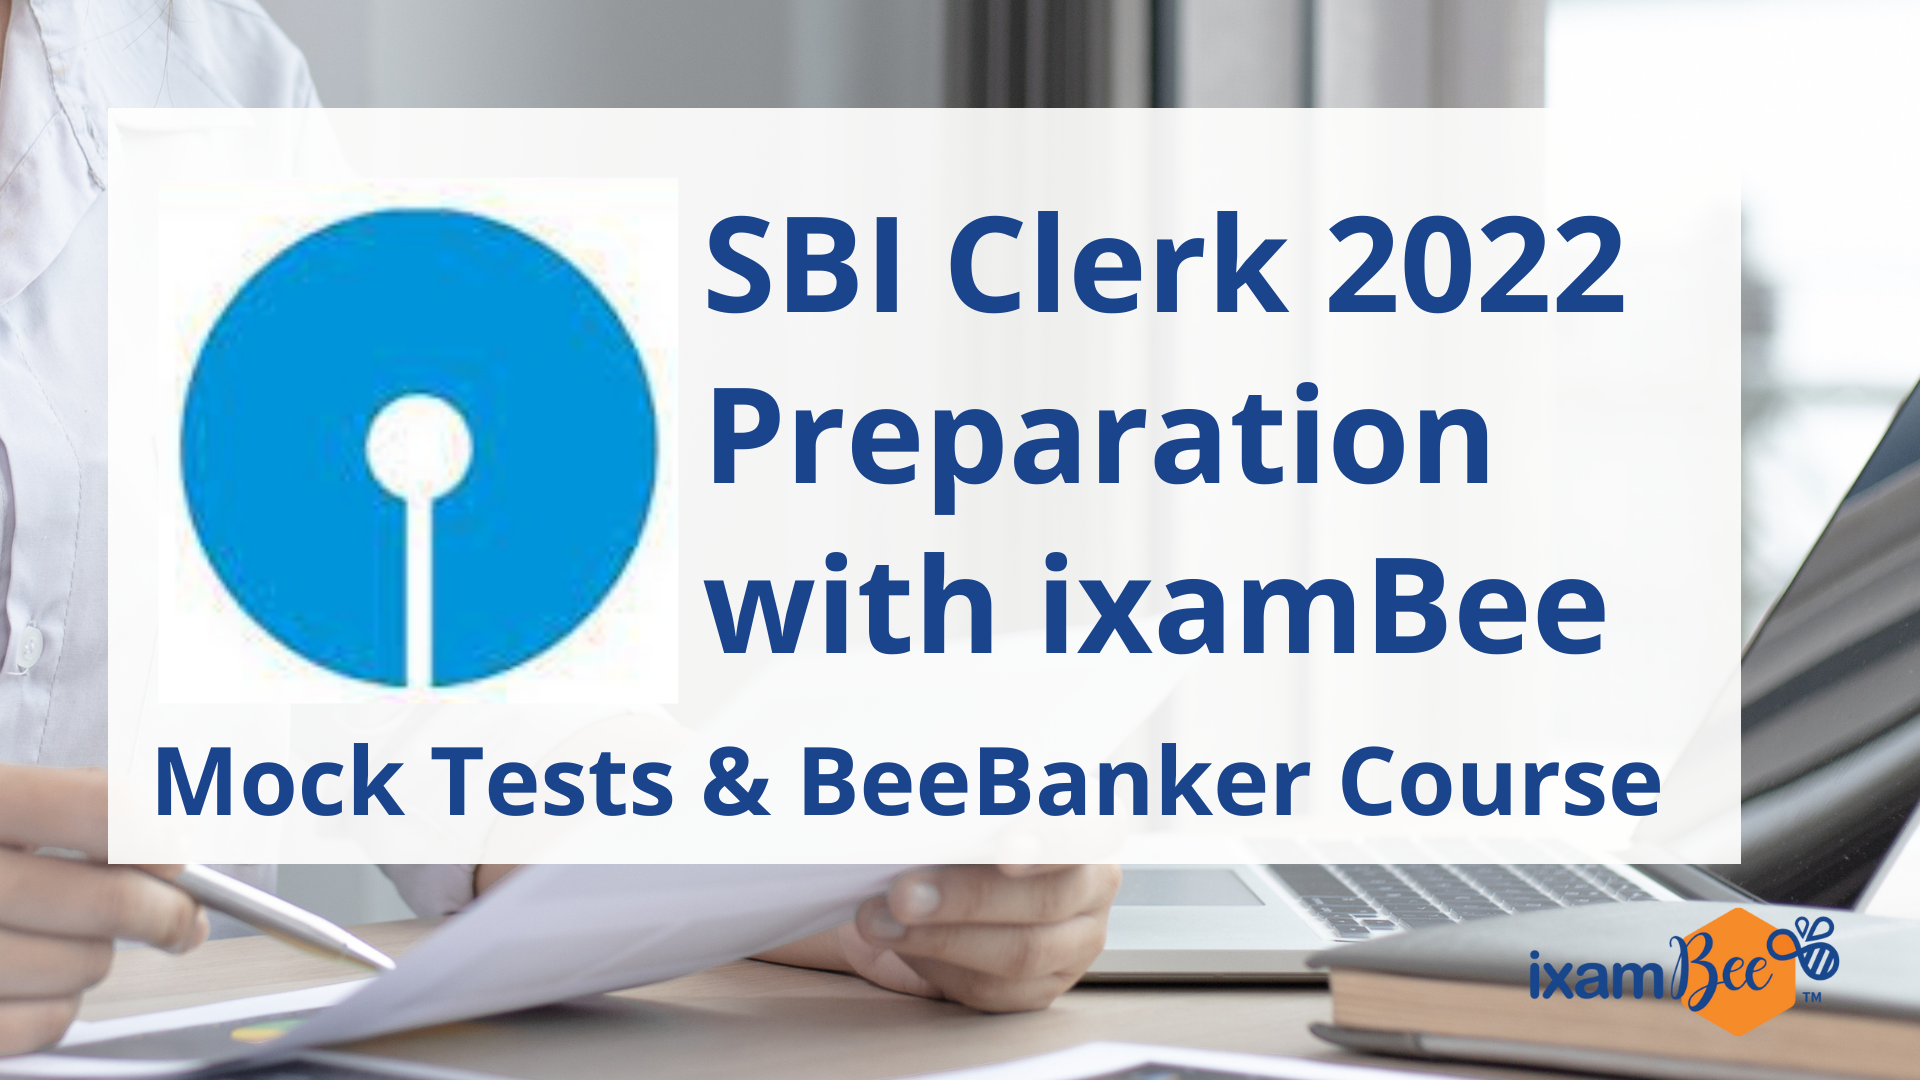 SBI Clerk 2022 Preparation: SBI Clerk Mock Tests & Online Course